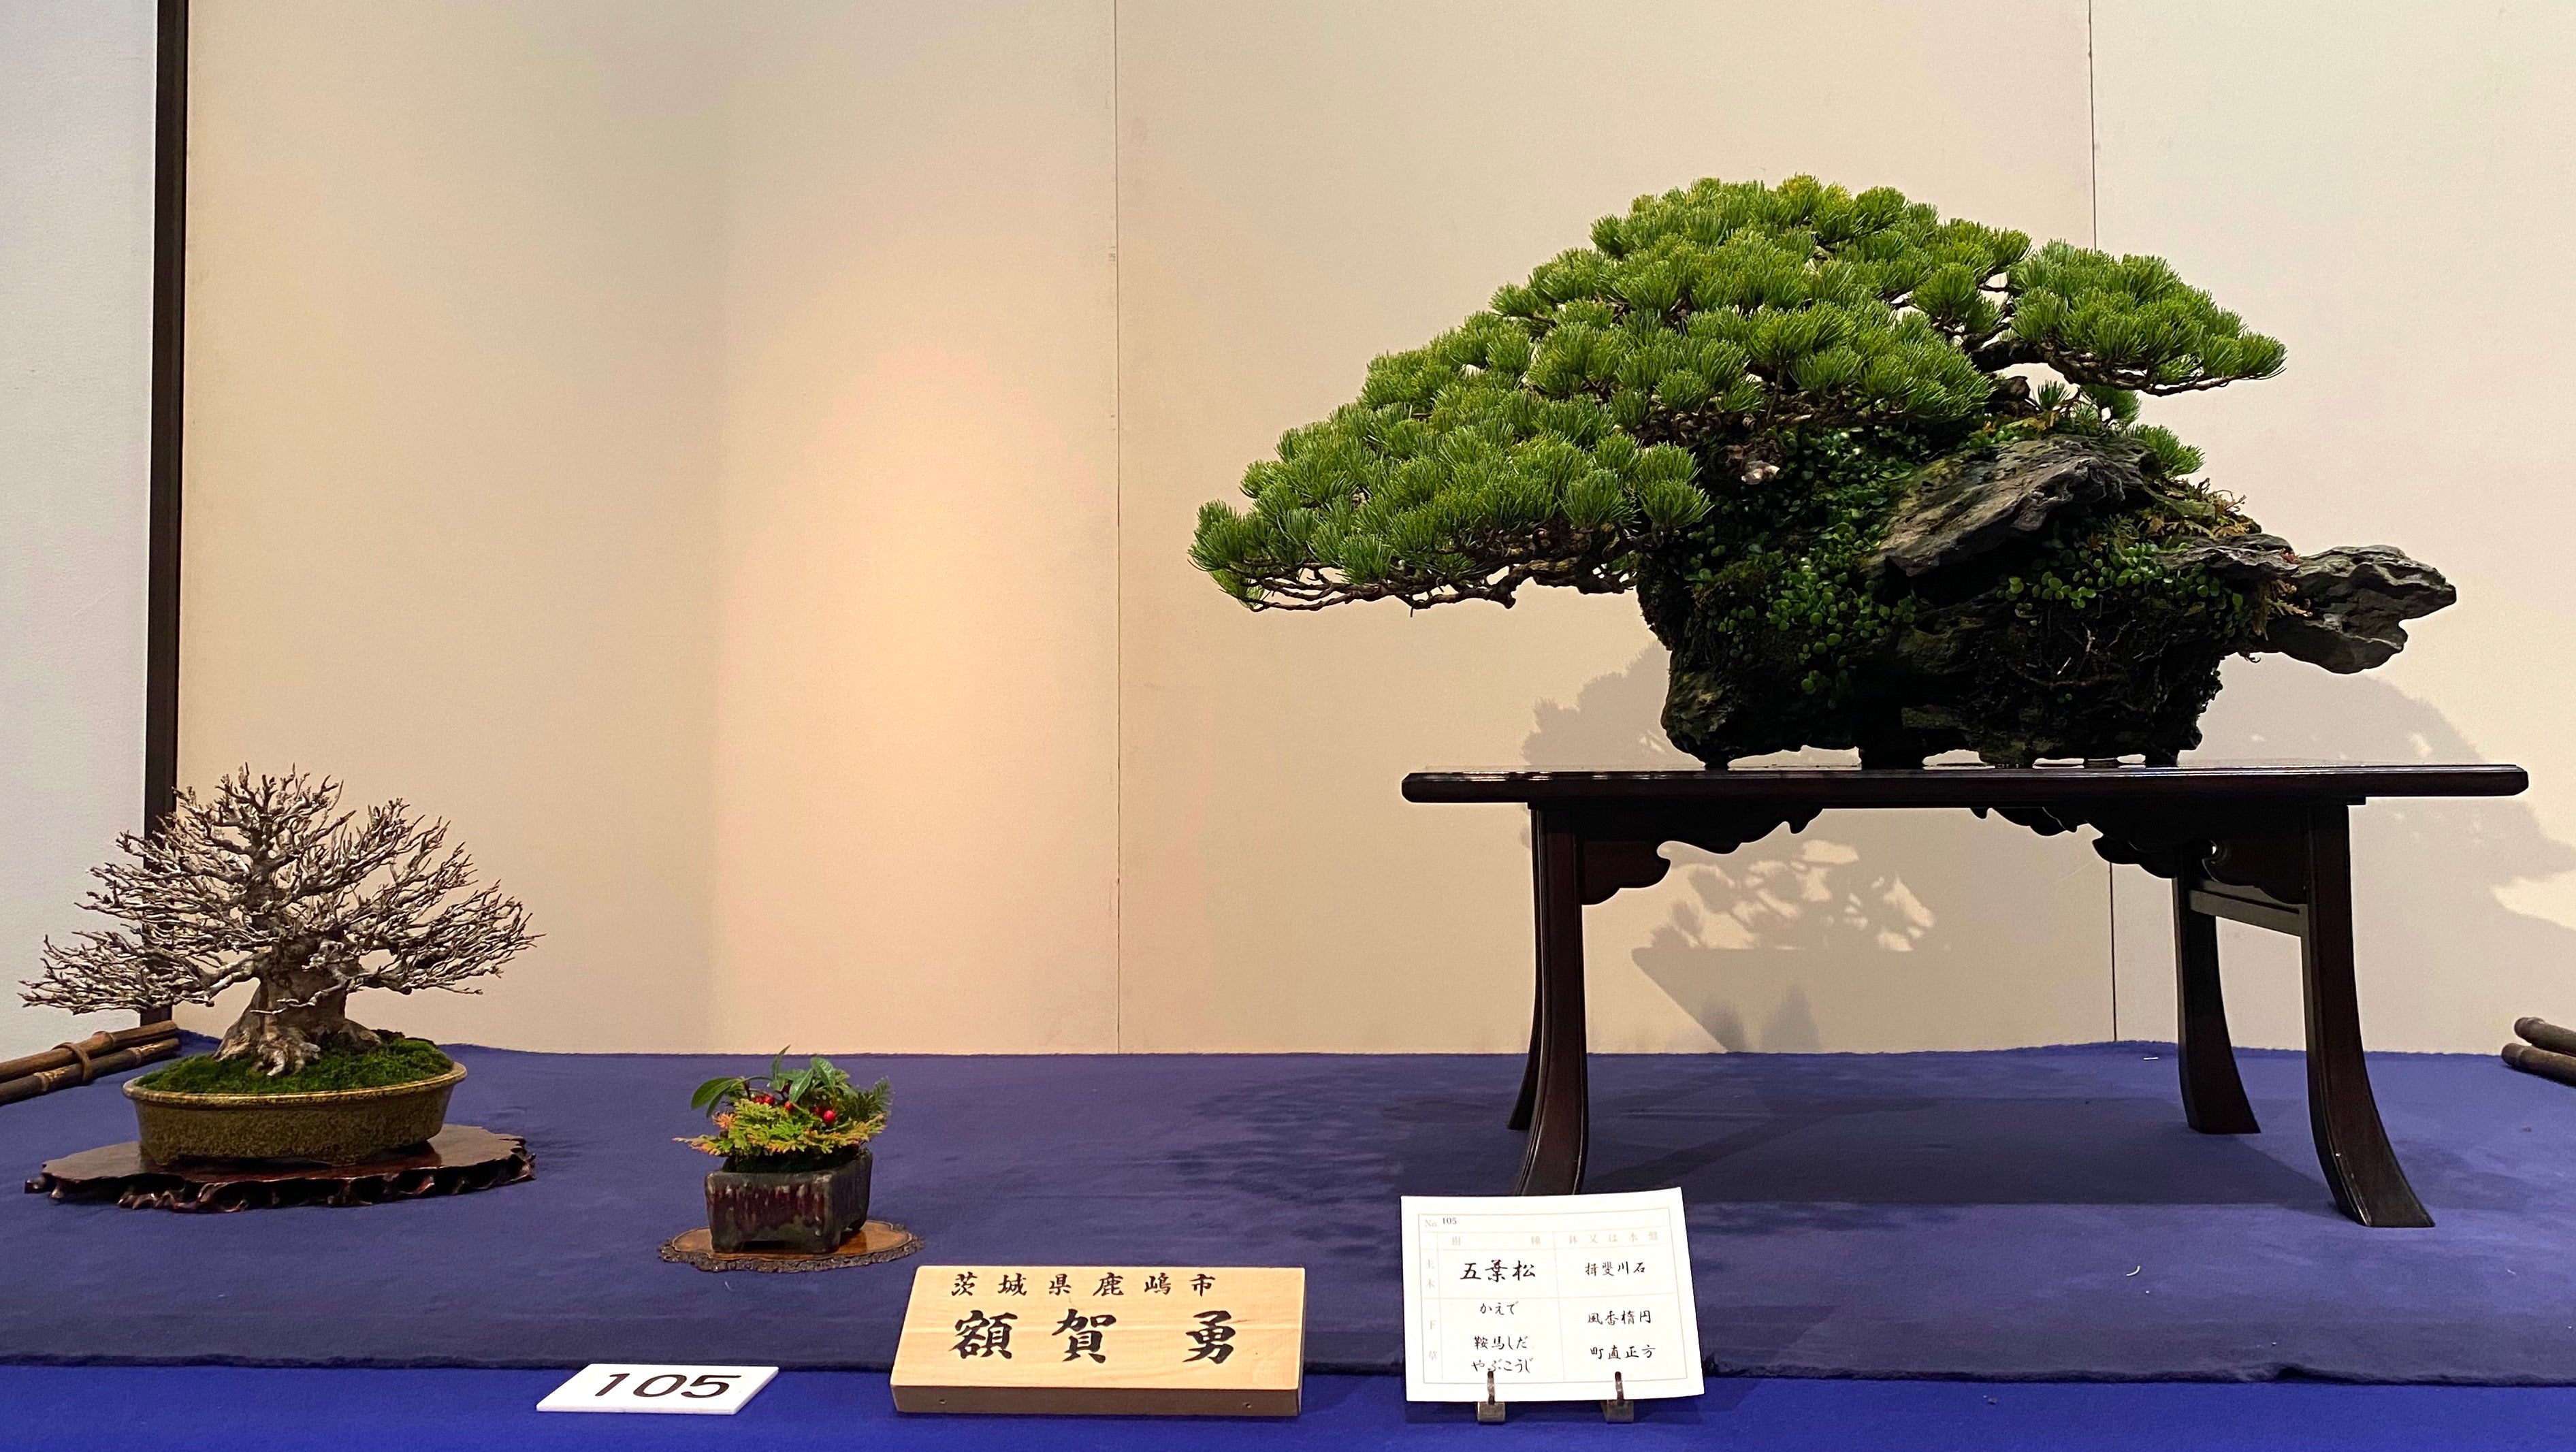 White Pine, 五葉松, 97th Kokufu exhibition, bonsai exhibition, bonsai japan